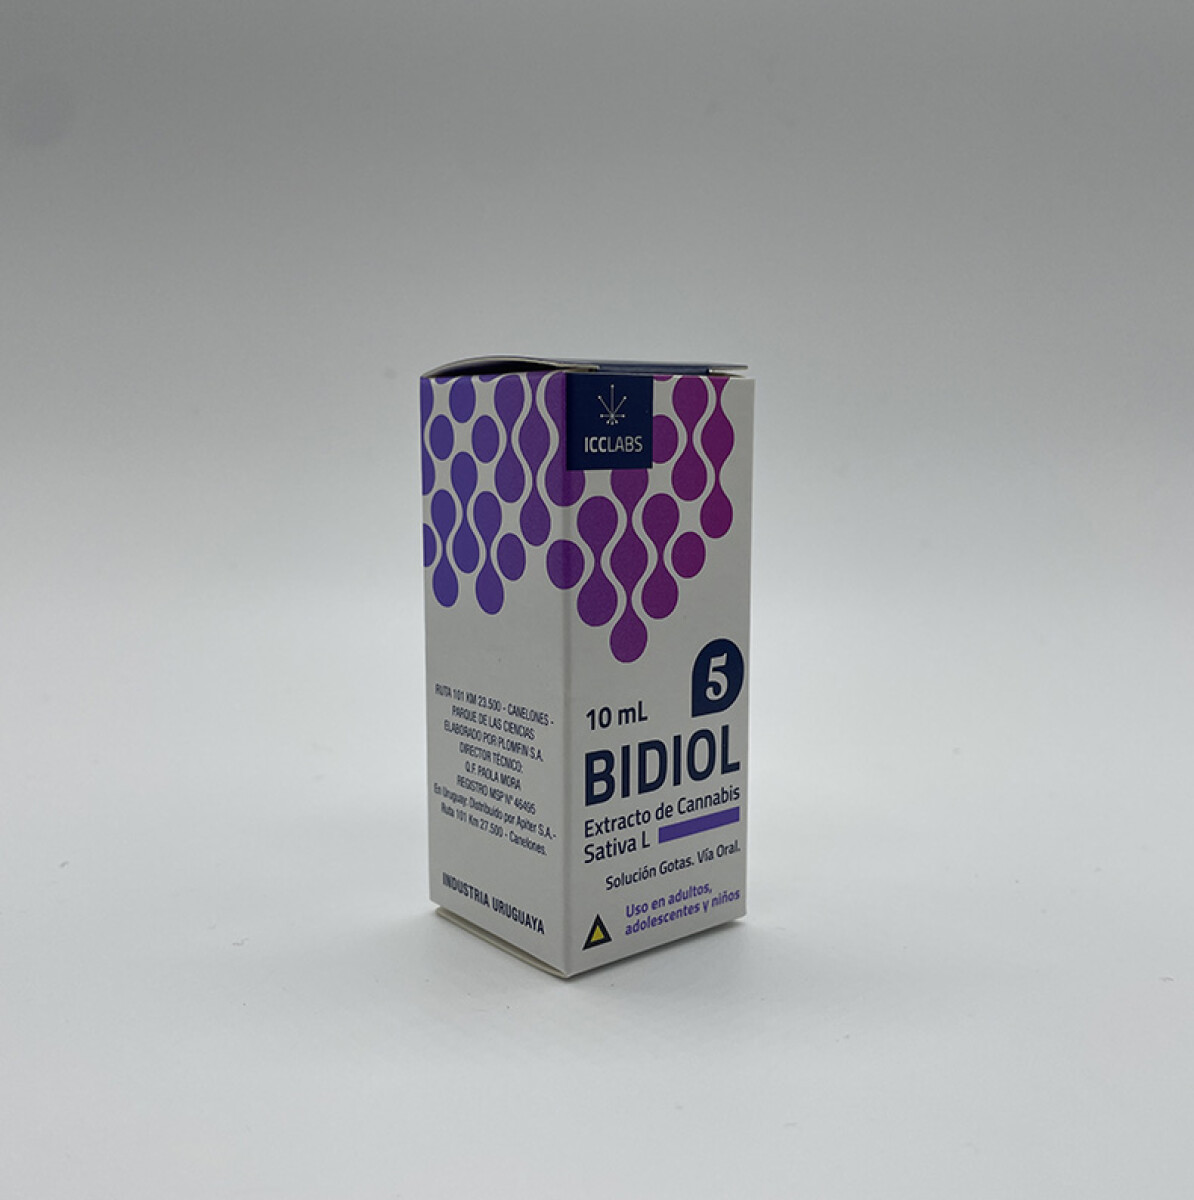 Extracto de cannabis Bidiol - 5% CBD 10 ml 